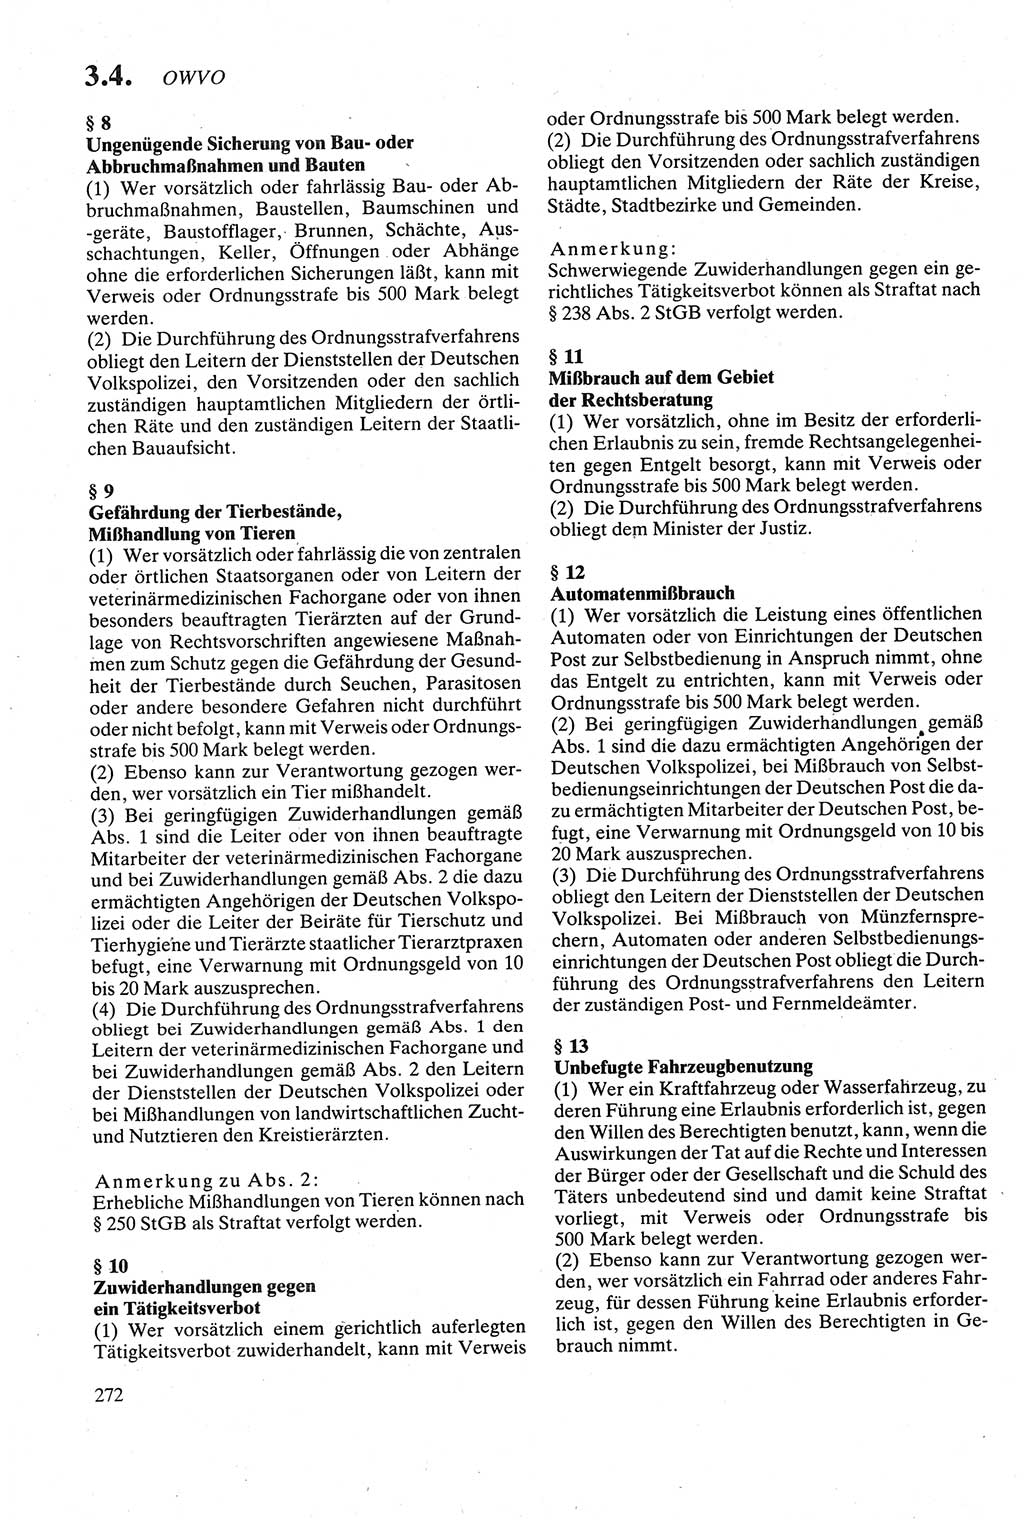 Strafgesetzbuch (StGB) der Deutschen Demokratischen Republik (DDR) sowie angrenzende Gesetze und Bestimmungen 1979, Seite 272 (StGB DDR Ges. Best. 1979, S. 272)